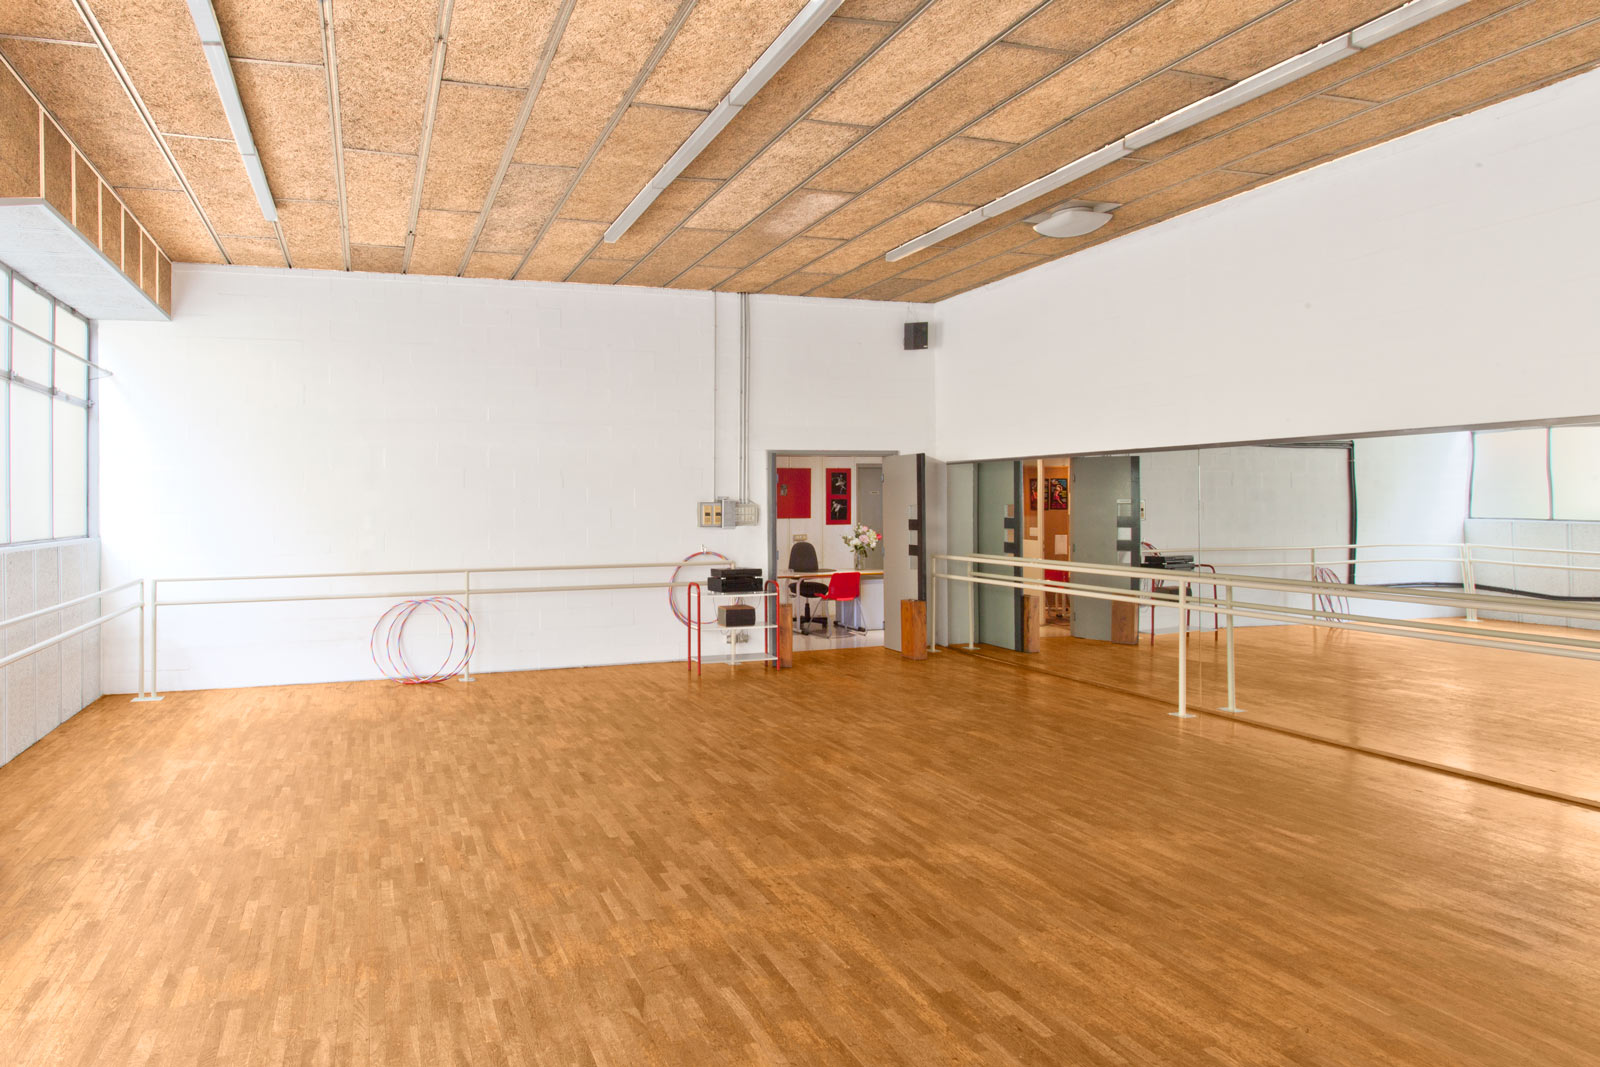 Accademia Arte Bergamo - Sale didattiche e sale ballo